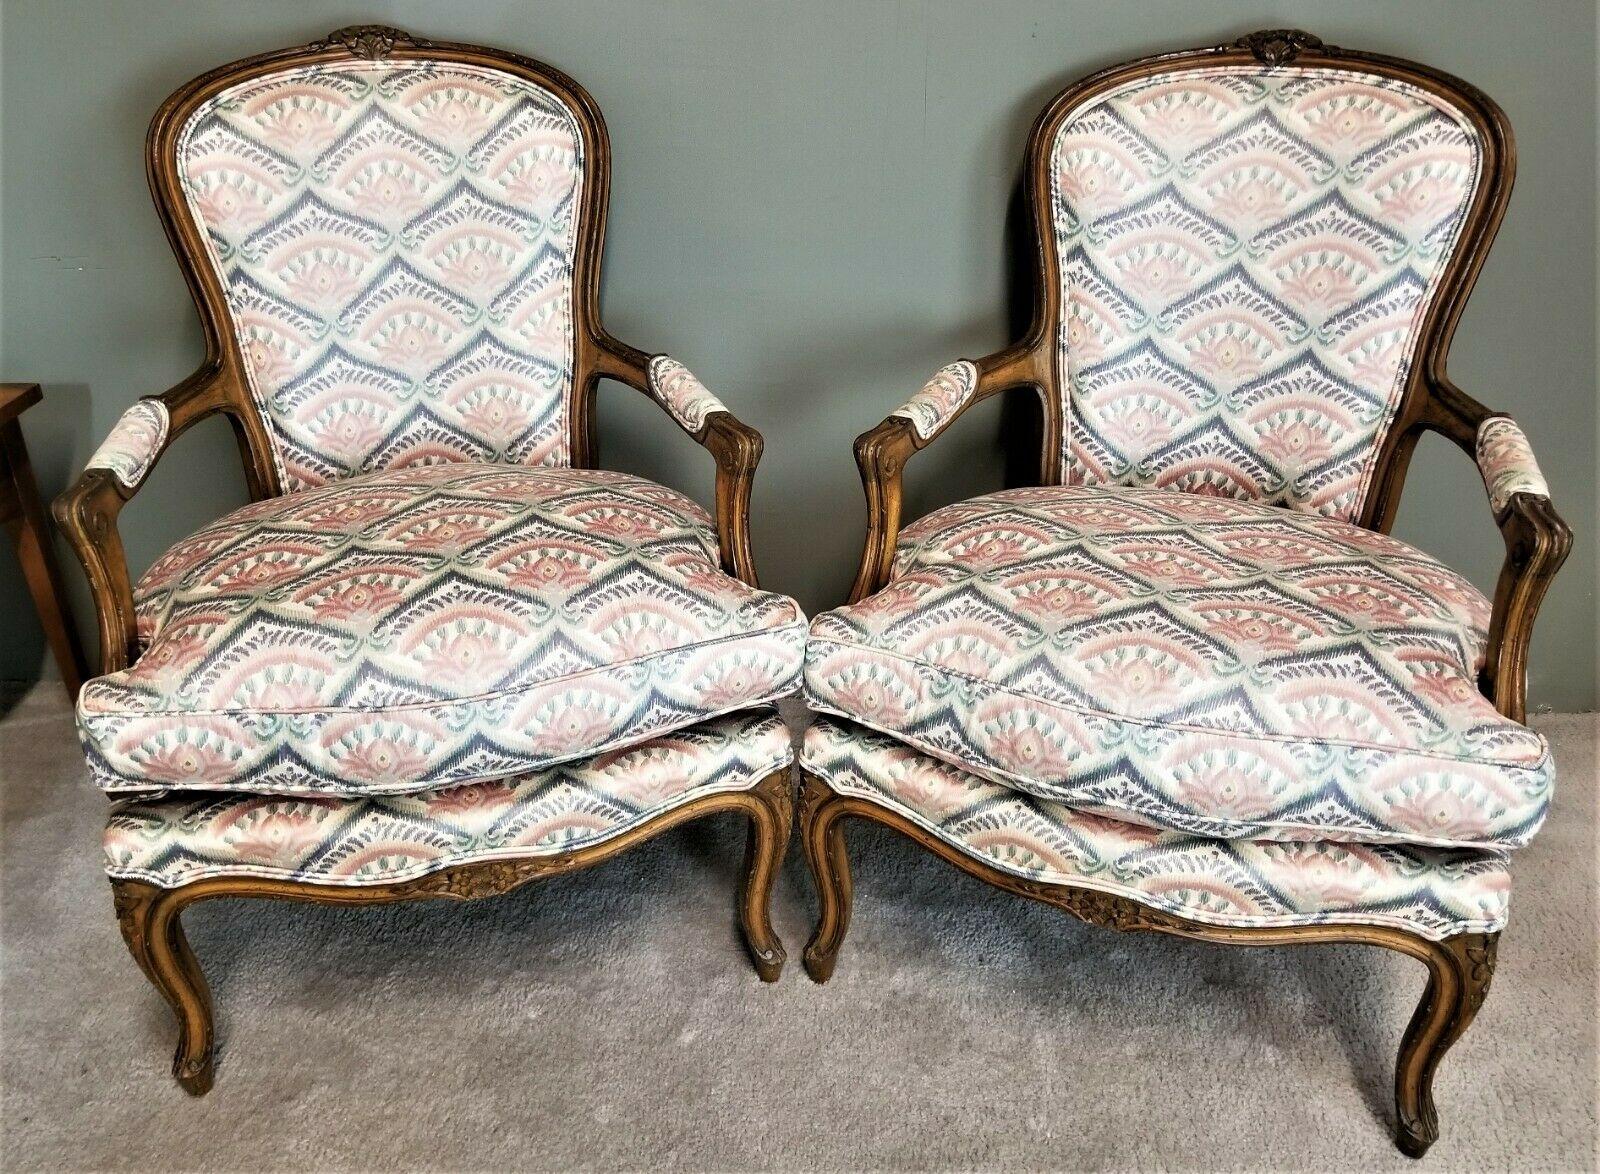 Offrant l'une de nos récentes acquisitions de meubles fins Palm Beach Estate de A 
Magnifique paire de fauteuils Fauteuil en bois sculpté à la main Louis XV de style provincial français Vintage

Avec des sièges à ressorts et des accents sculptés à